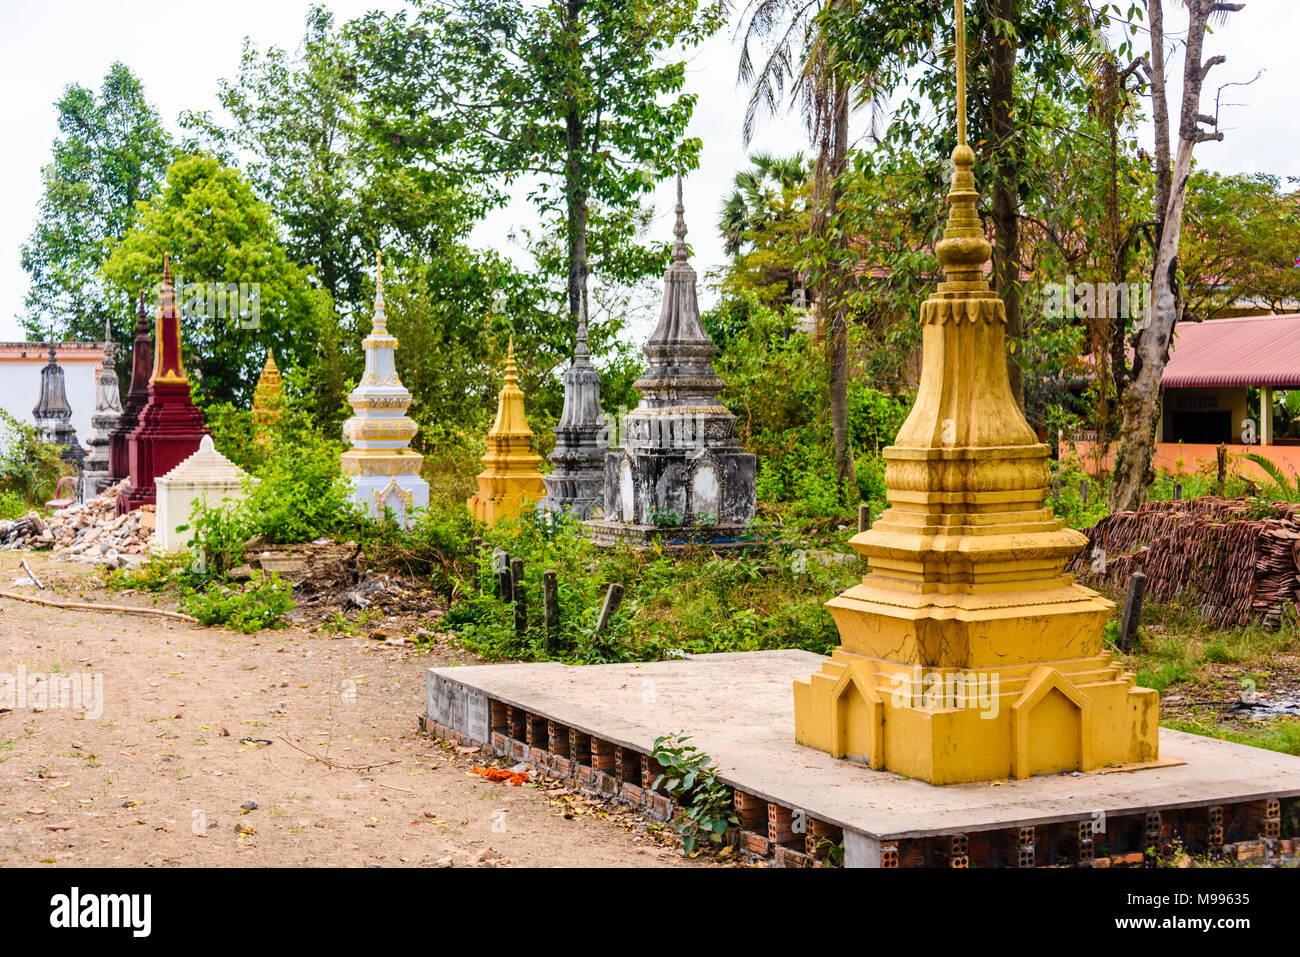 Stupa, traditionelle buddhistische Bestattung Grabsteine an einem Tempel in einem ländlichen Gebiet von Kambodscha Stockfoto